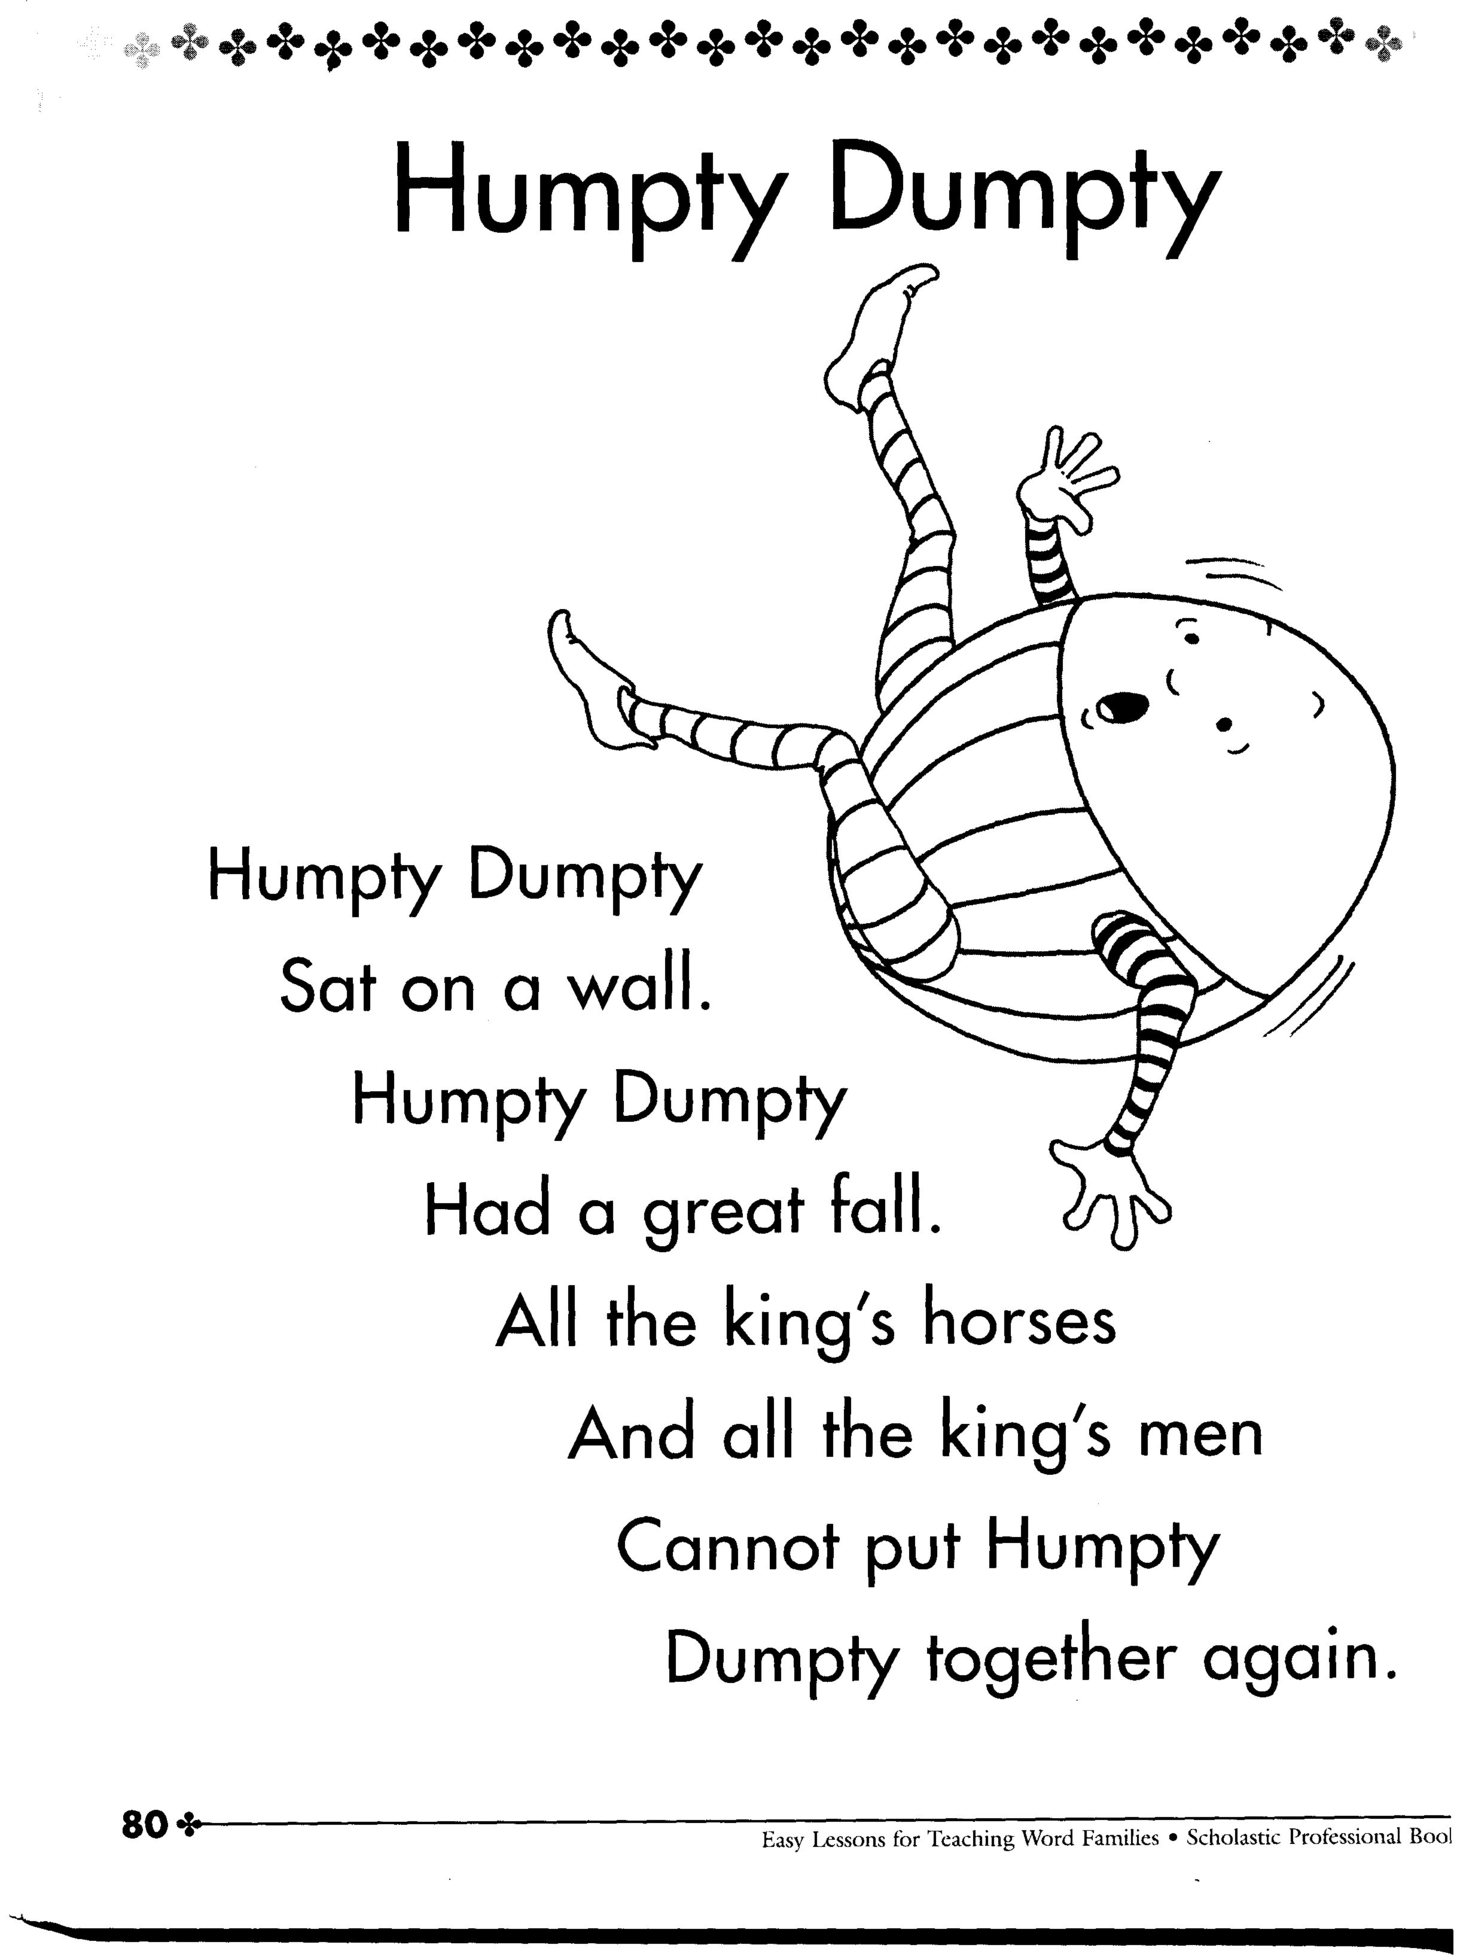 Humpty Dumpty | Movie Pictures